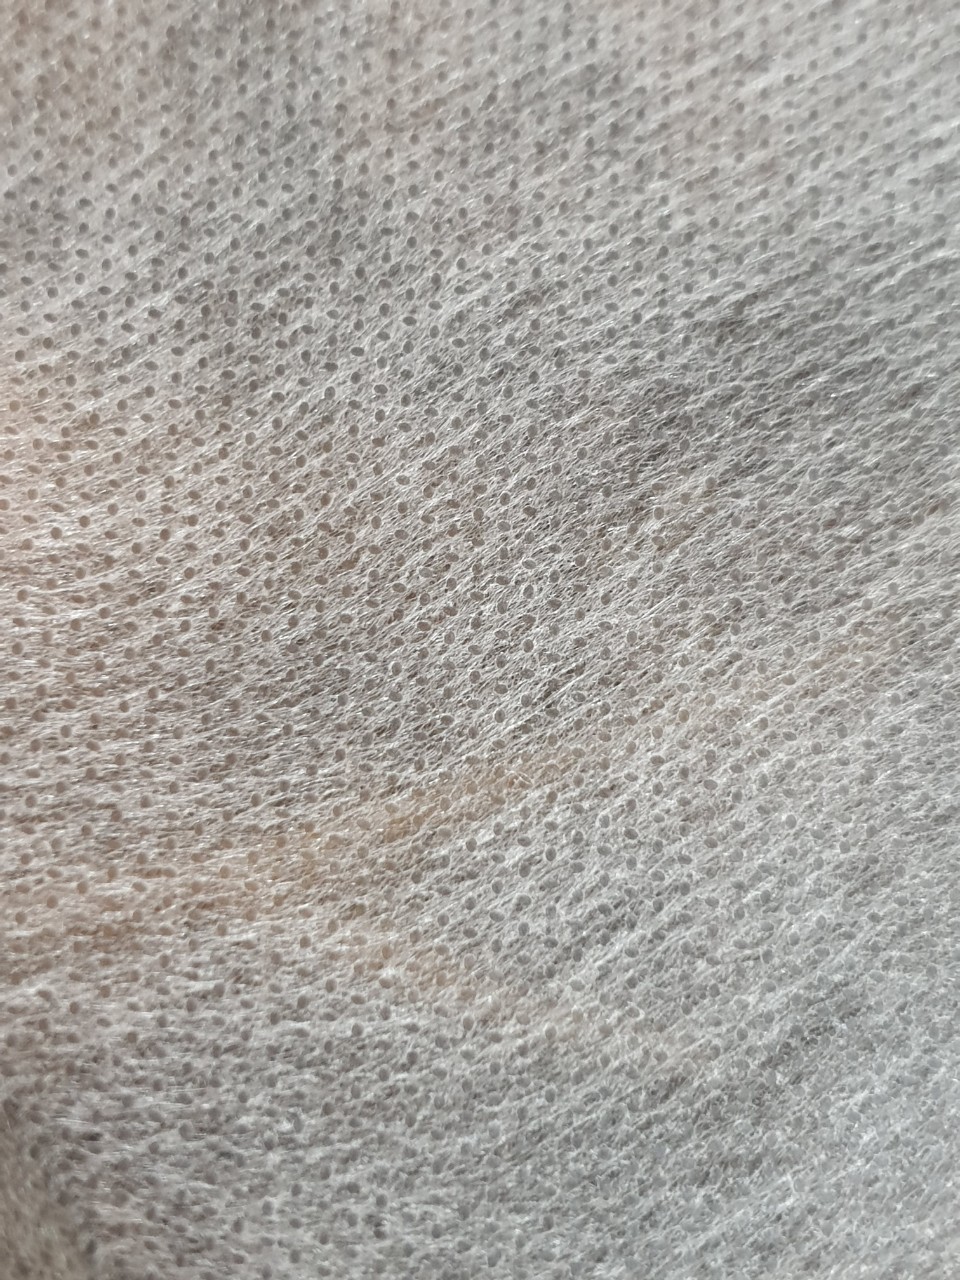  Vải không dệt màu trắng SS 25gsm - Non woven white color SS 25gsm